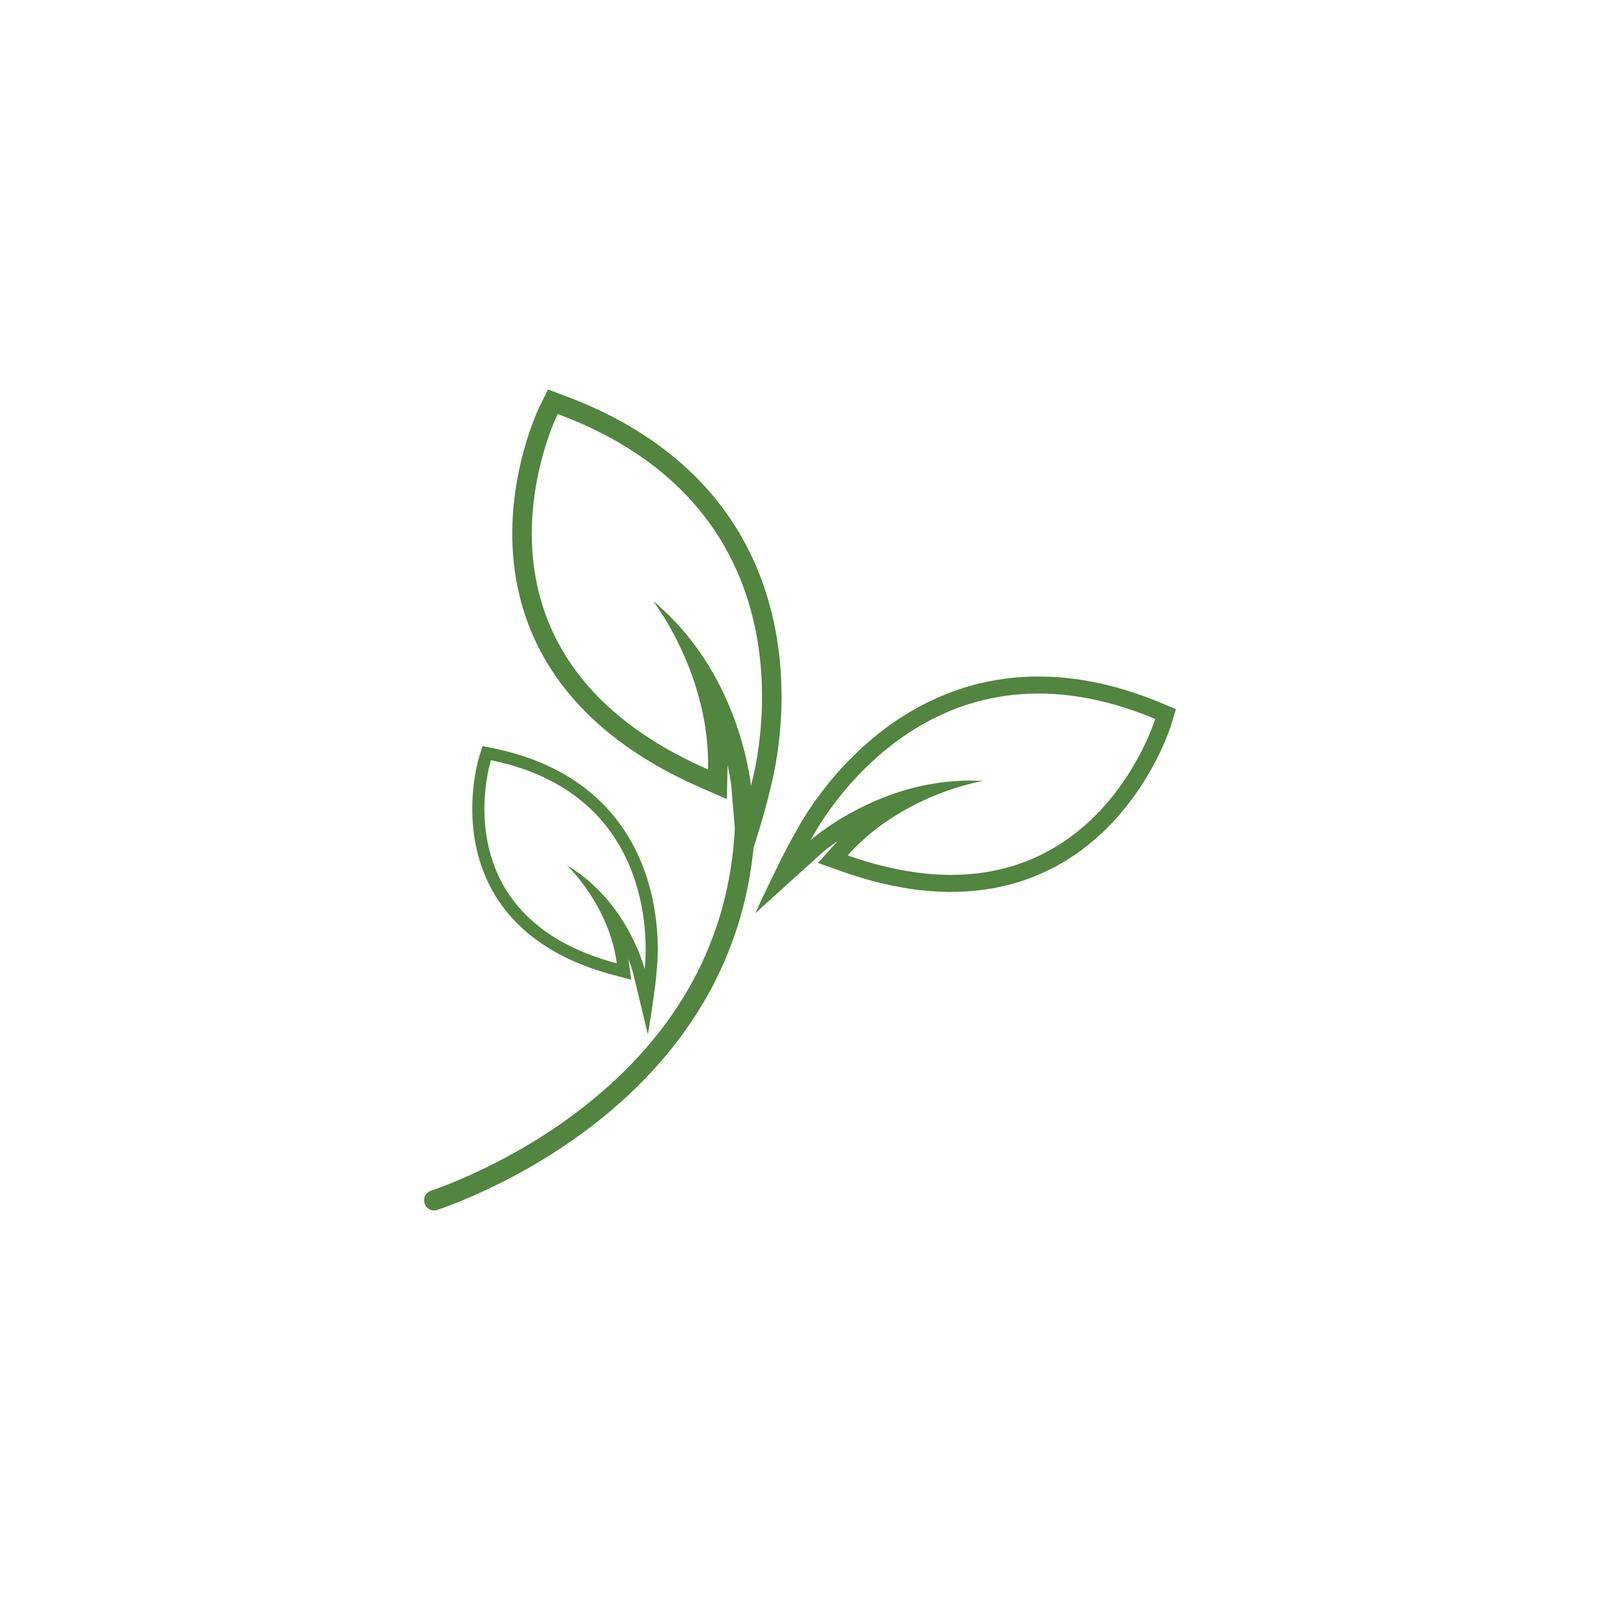 Green leaf logo by awk